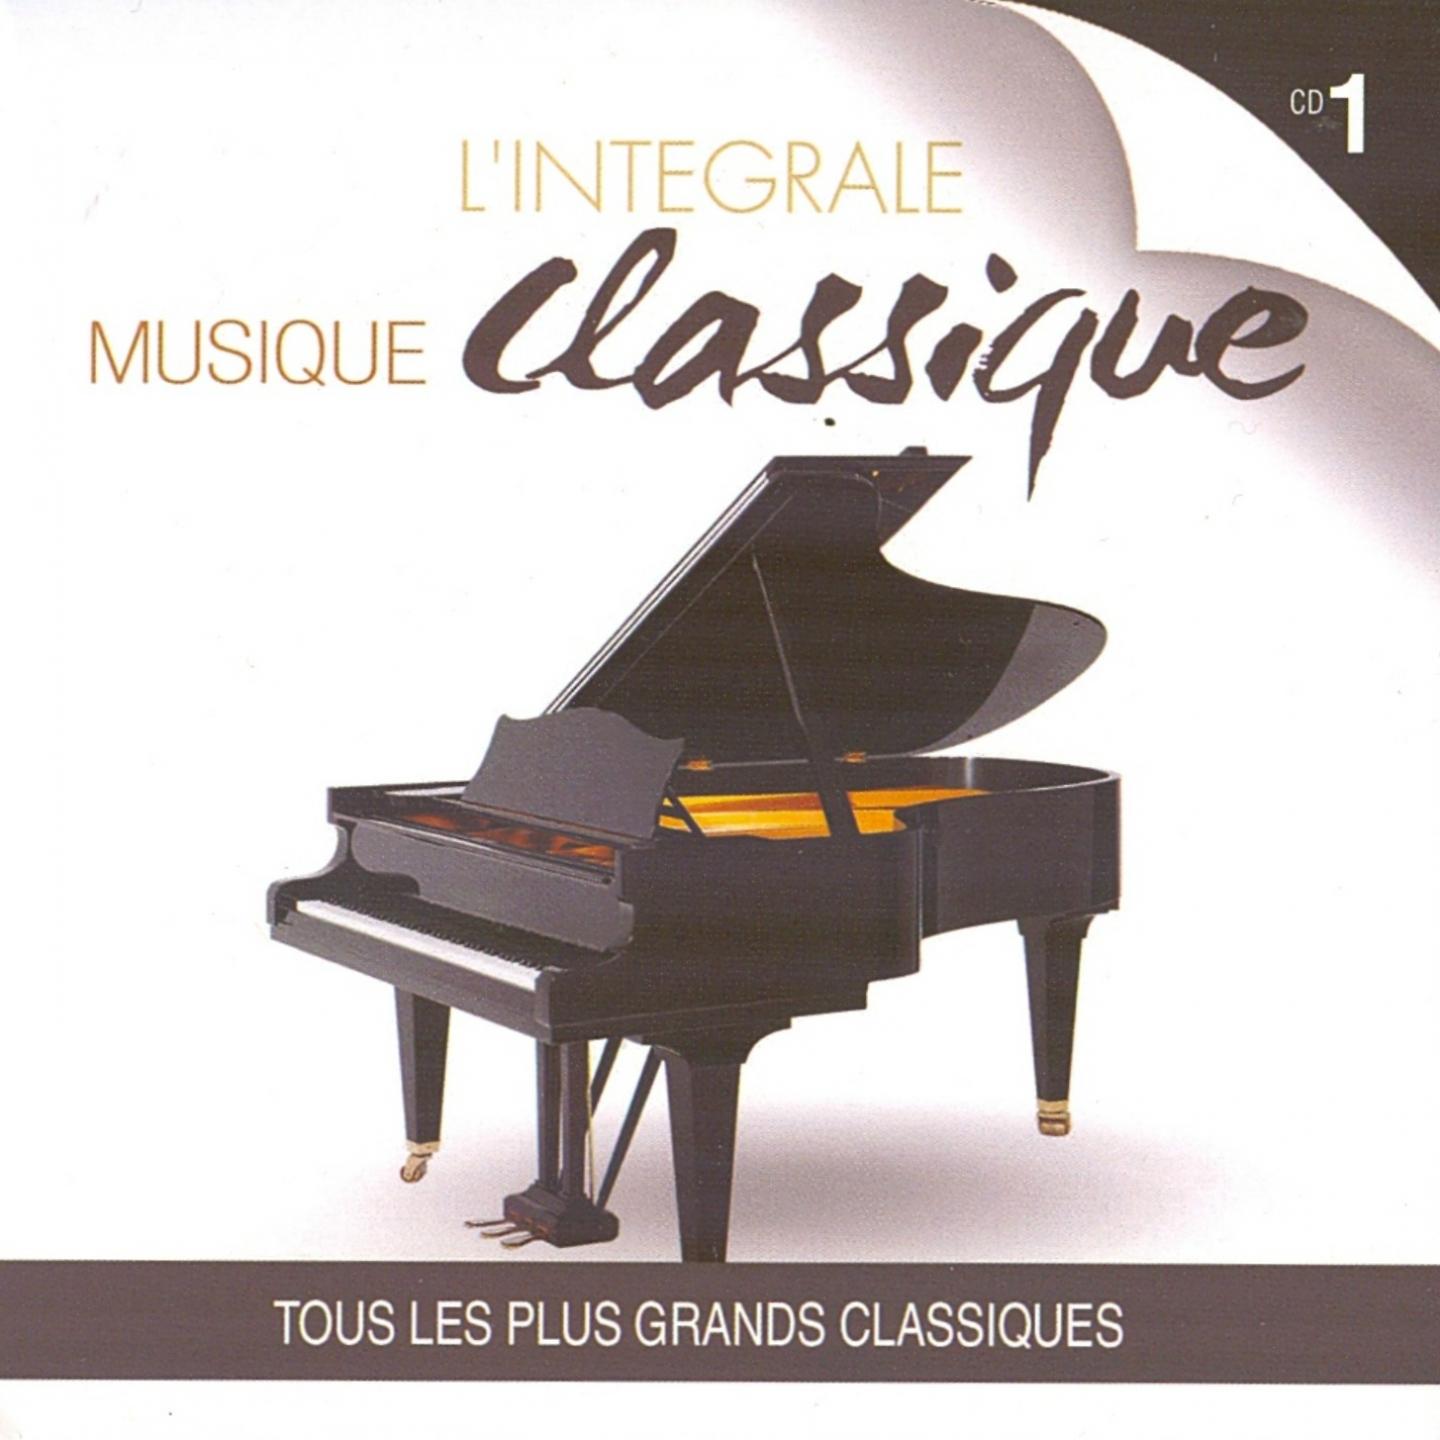 L' inte grale musique classique, vol. 1